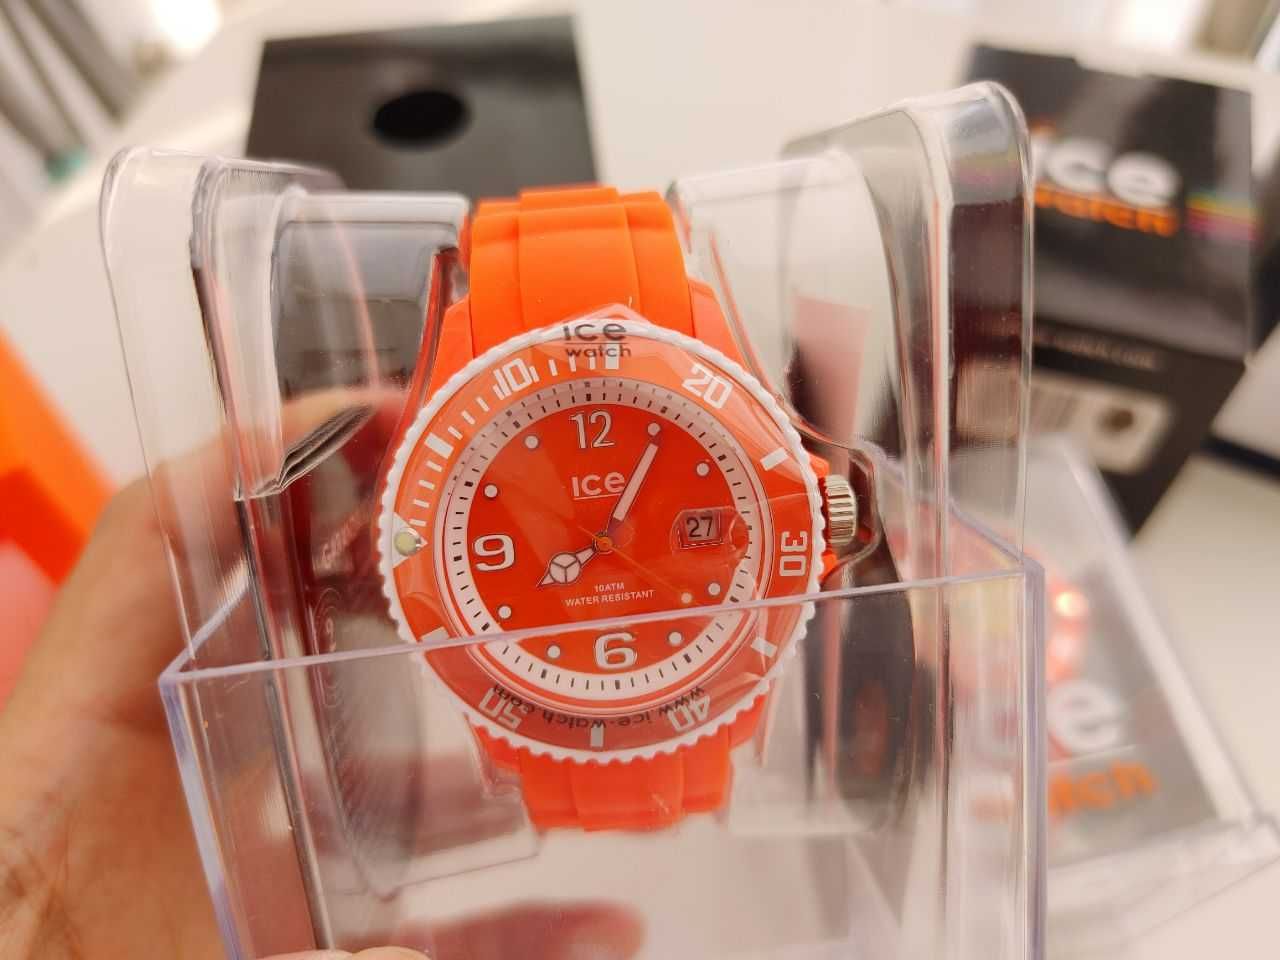 Оранжевые коллекционные часы Ice Watch Можно на подарок Своя цена 120$